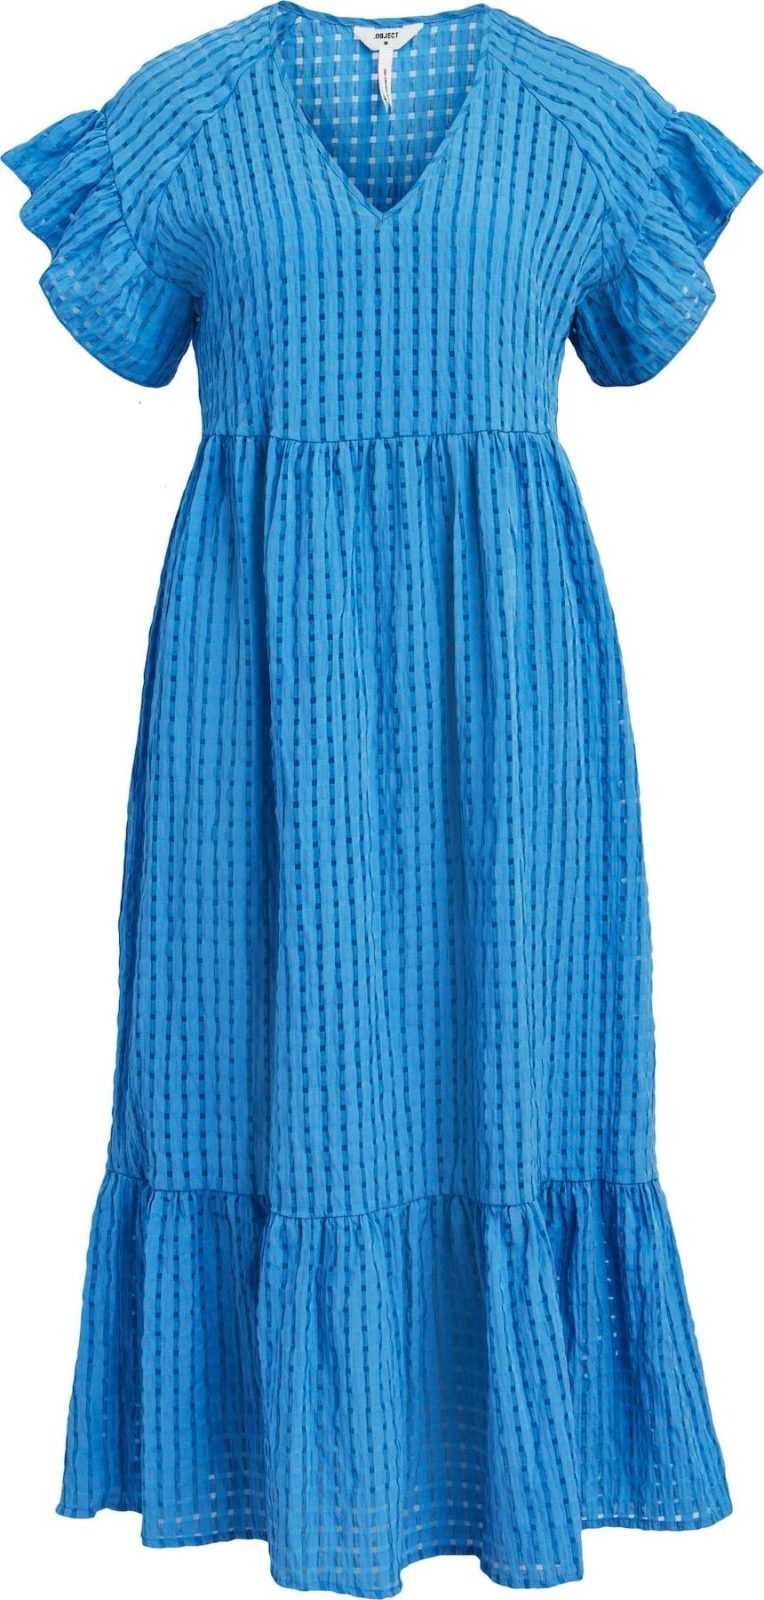 OBJECT Letní šaty 'Vita' nebeská modř